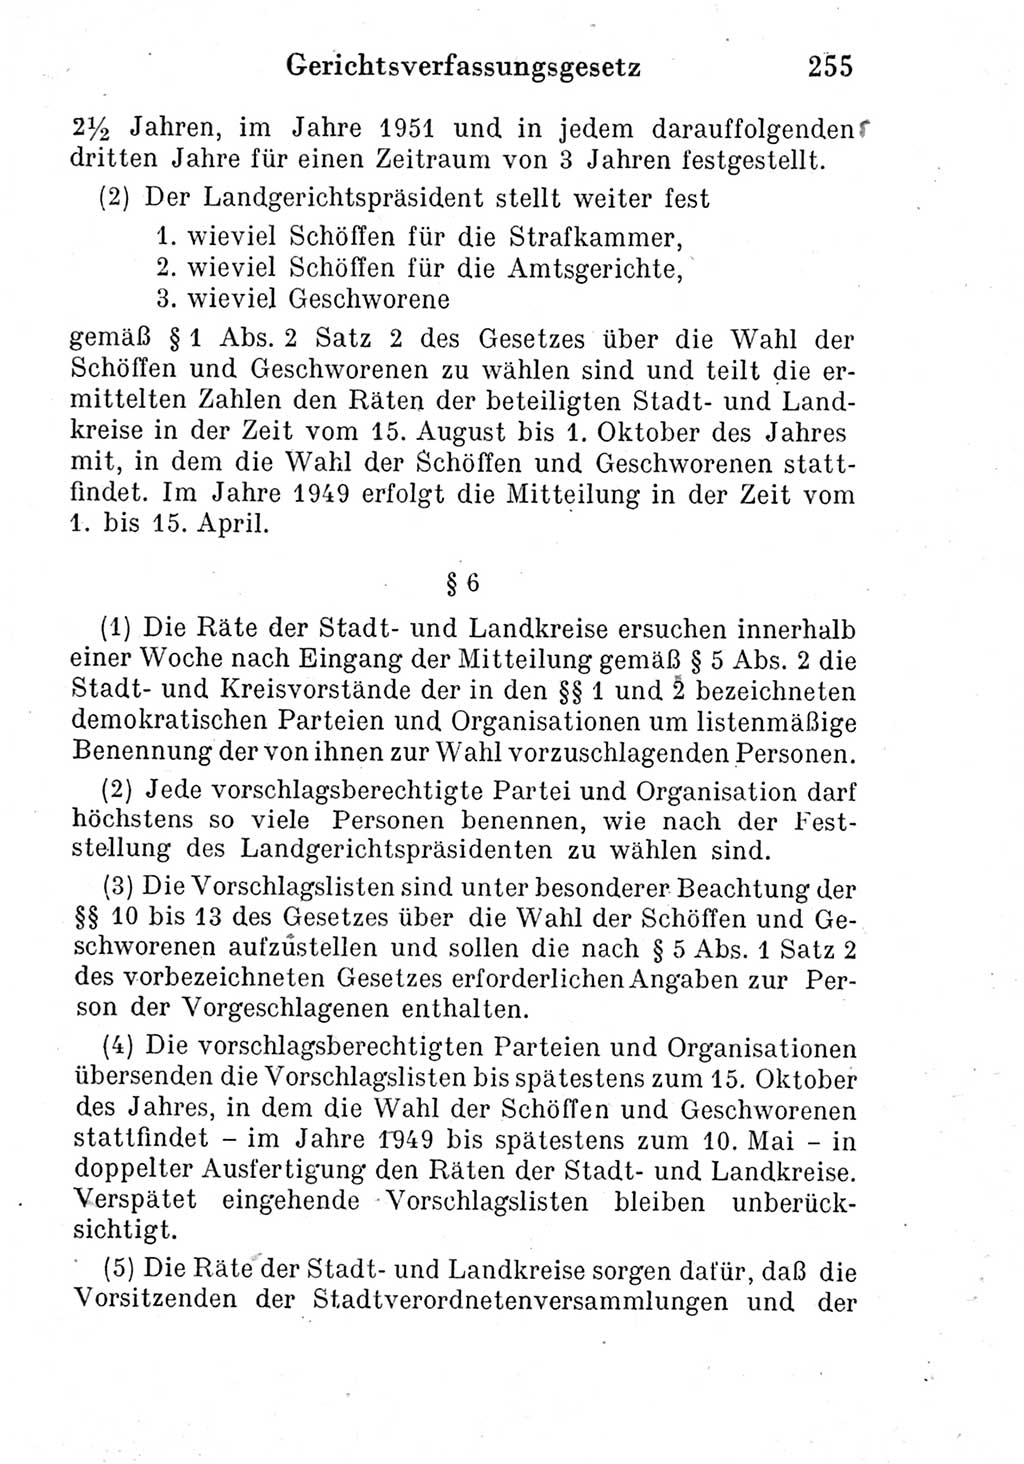 Strafprozeßordnung (StPO), Gerichtsverfassungsgesetz (GVG) und zahlreiche Nebengesetze der Deutschen Demokratischen Republik (DDR) 1950, Seite 255 (StPO GVG Ges. DDR 1950, S. 255)